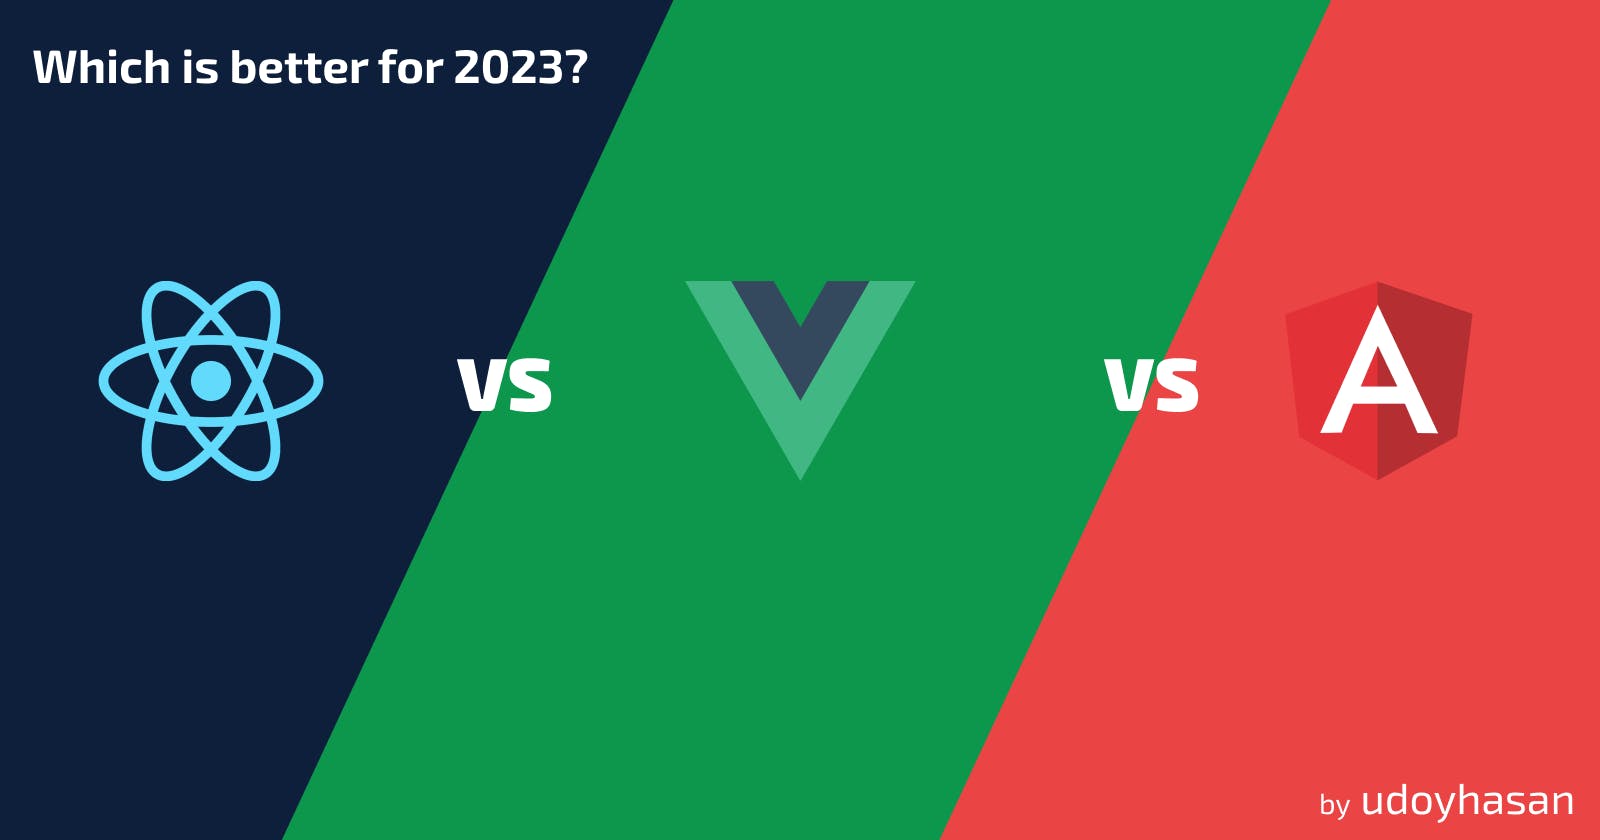 ReactJS vs VueJS vs AngularJS: Which Is the Best Frontend Framework for 2023?